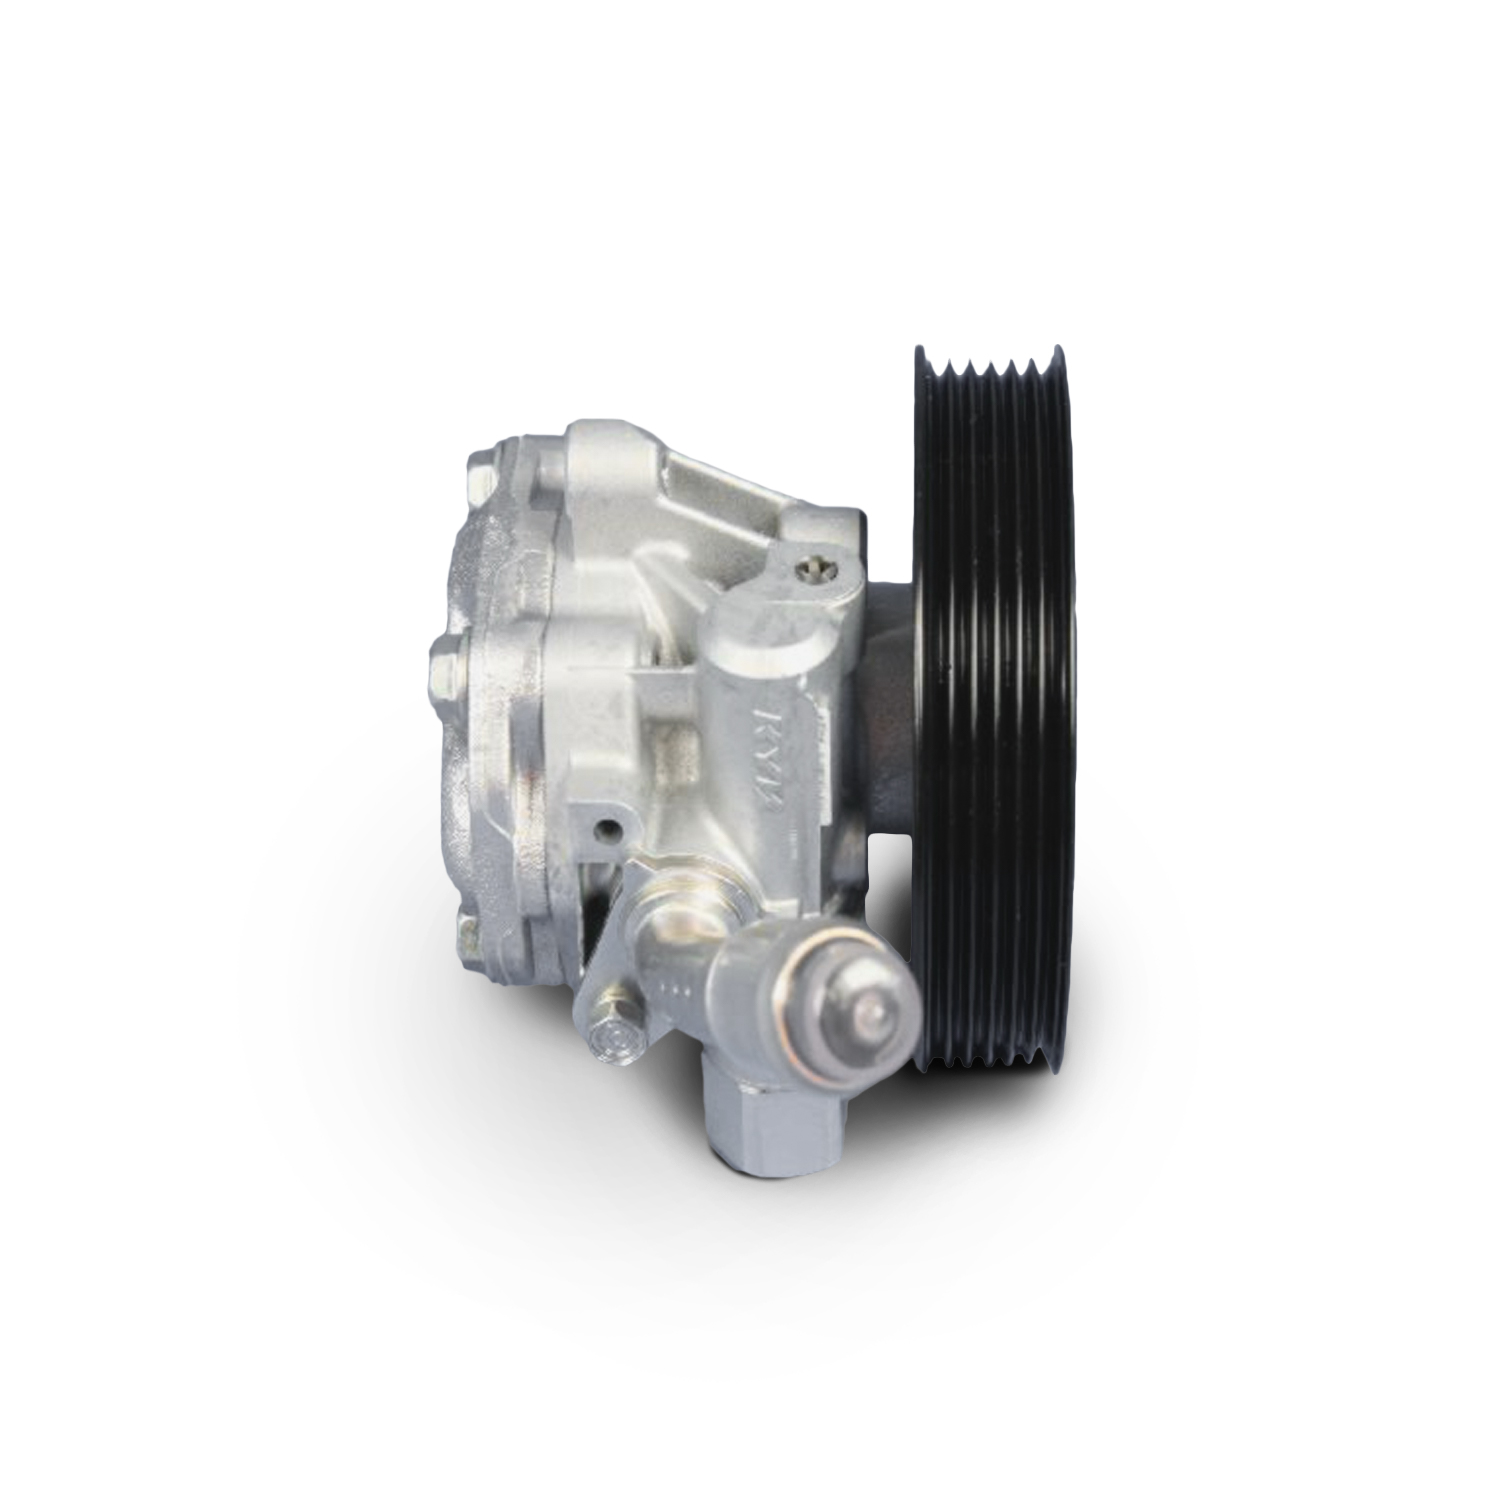 MOPAR PARTS - Power Steering Pump Complete Kit - MOP 05154400AC